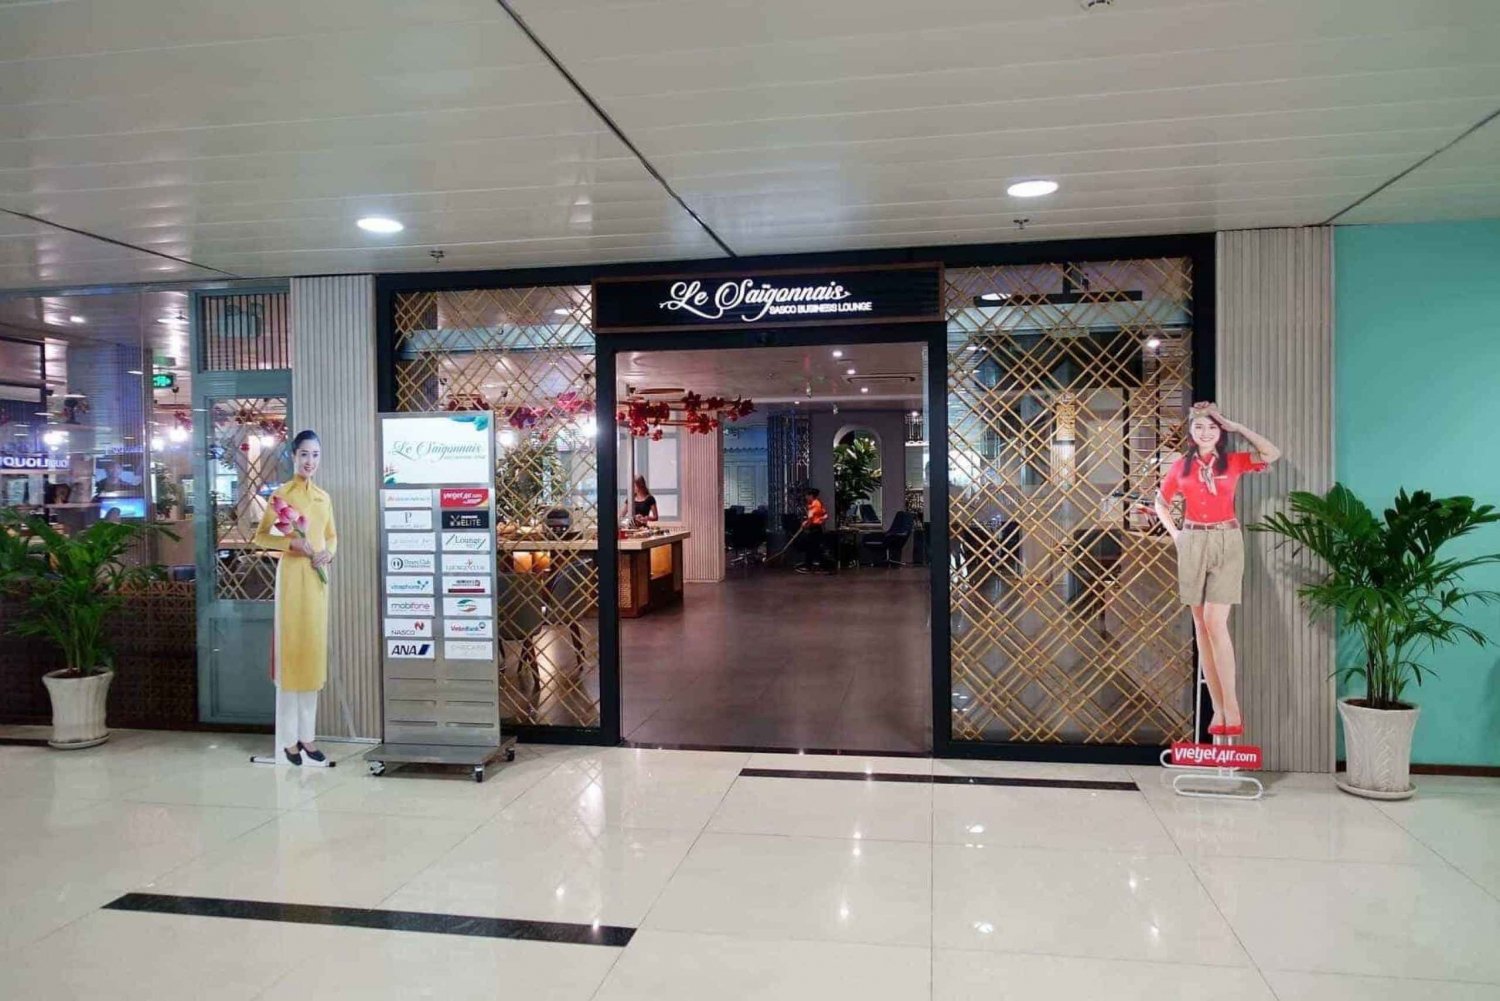 Hochimin: Salon biznesowy na międzynarodowym lotnisku Tan Son Nhat